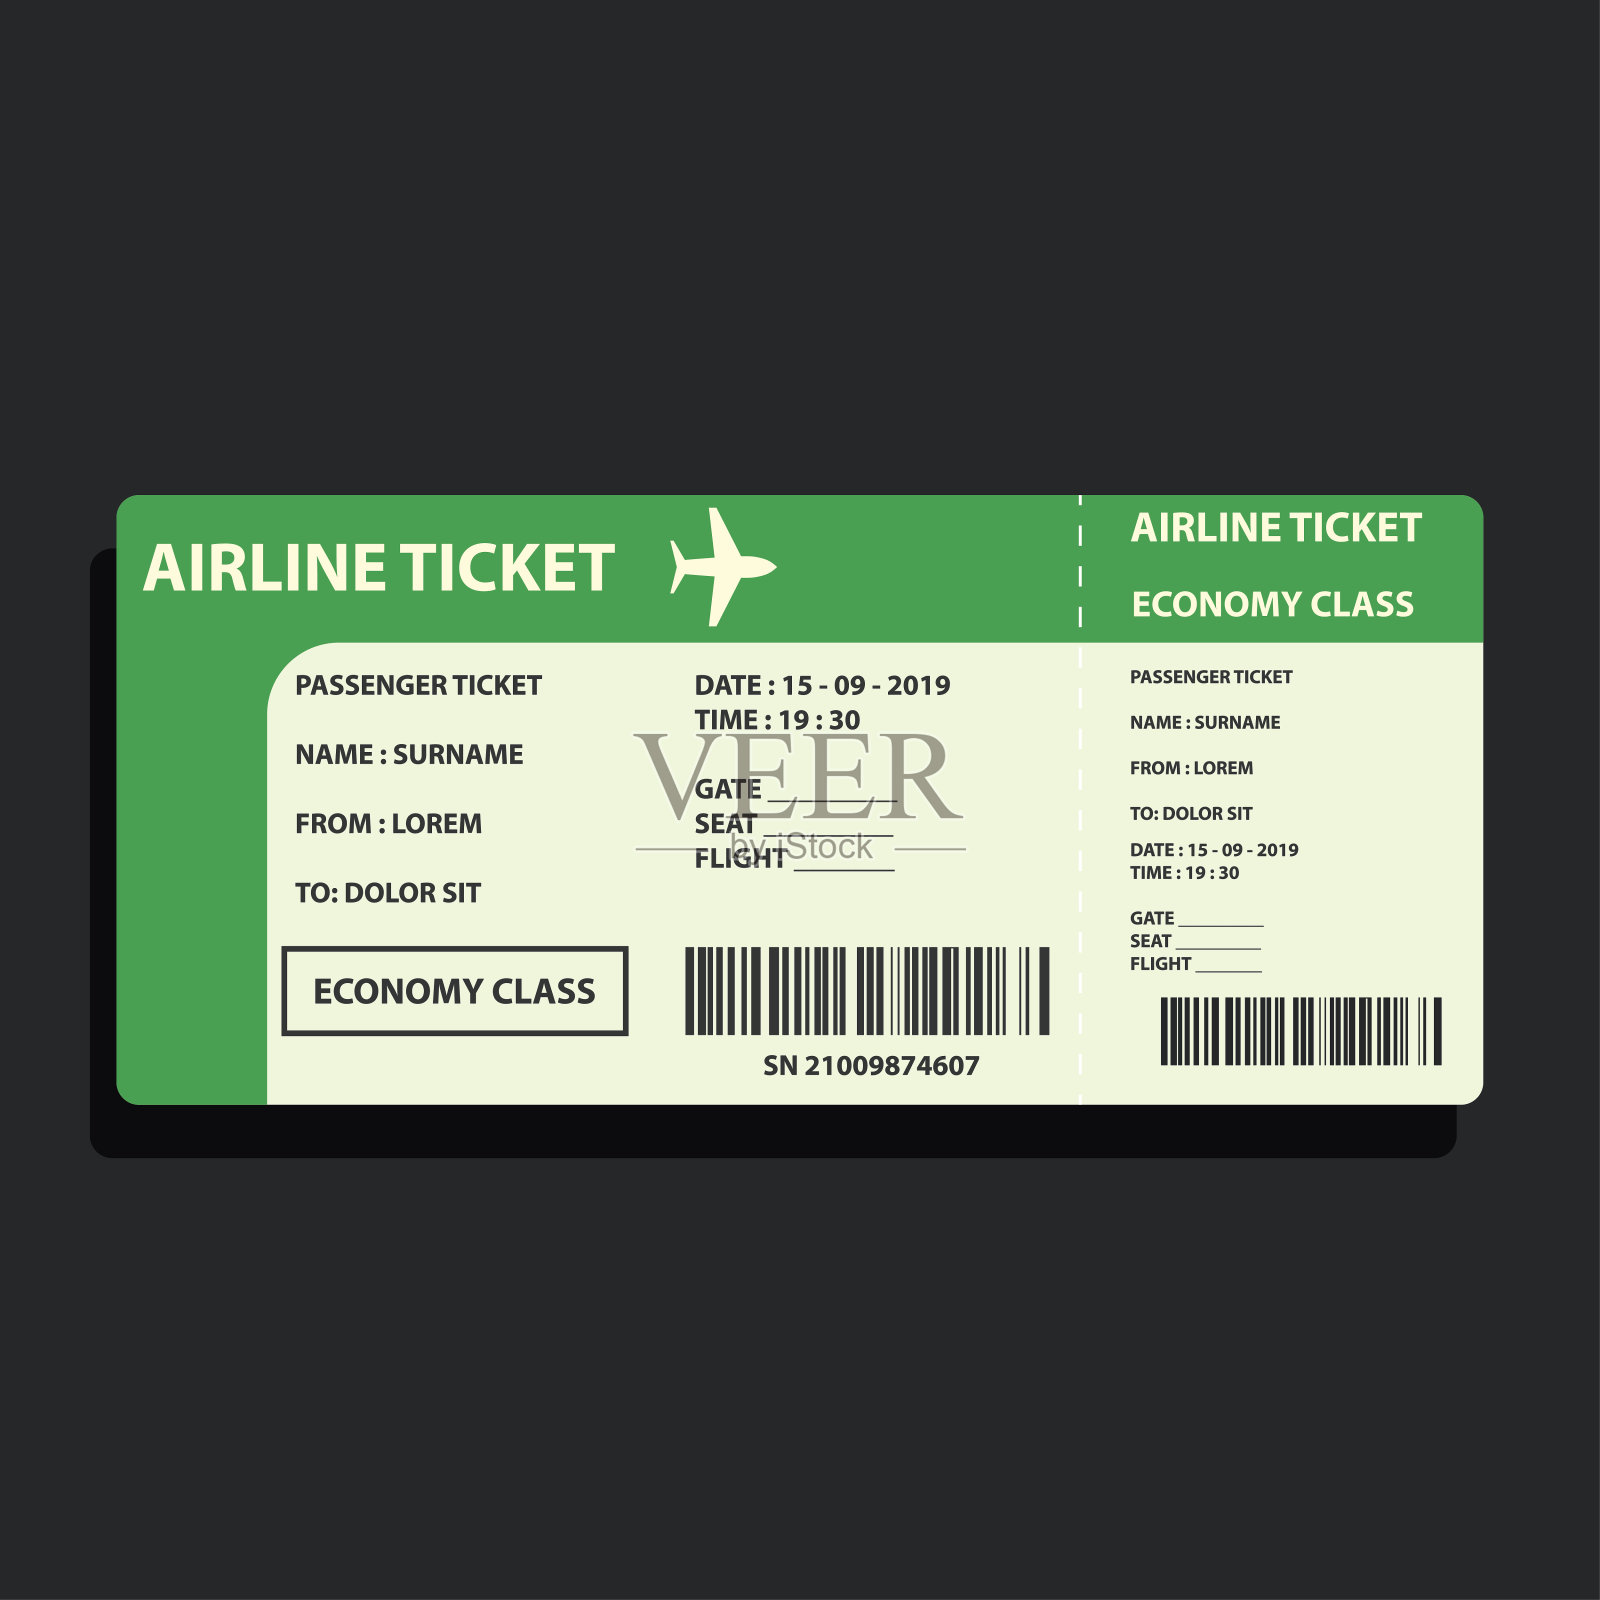 乘飞机旅行的机票。矢量图设计模板素材